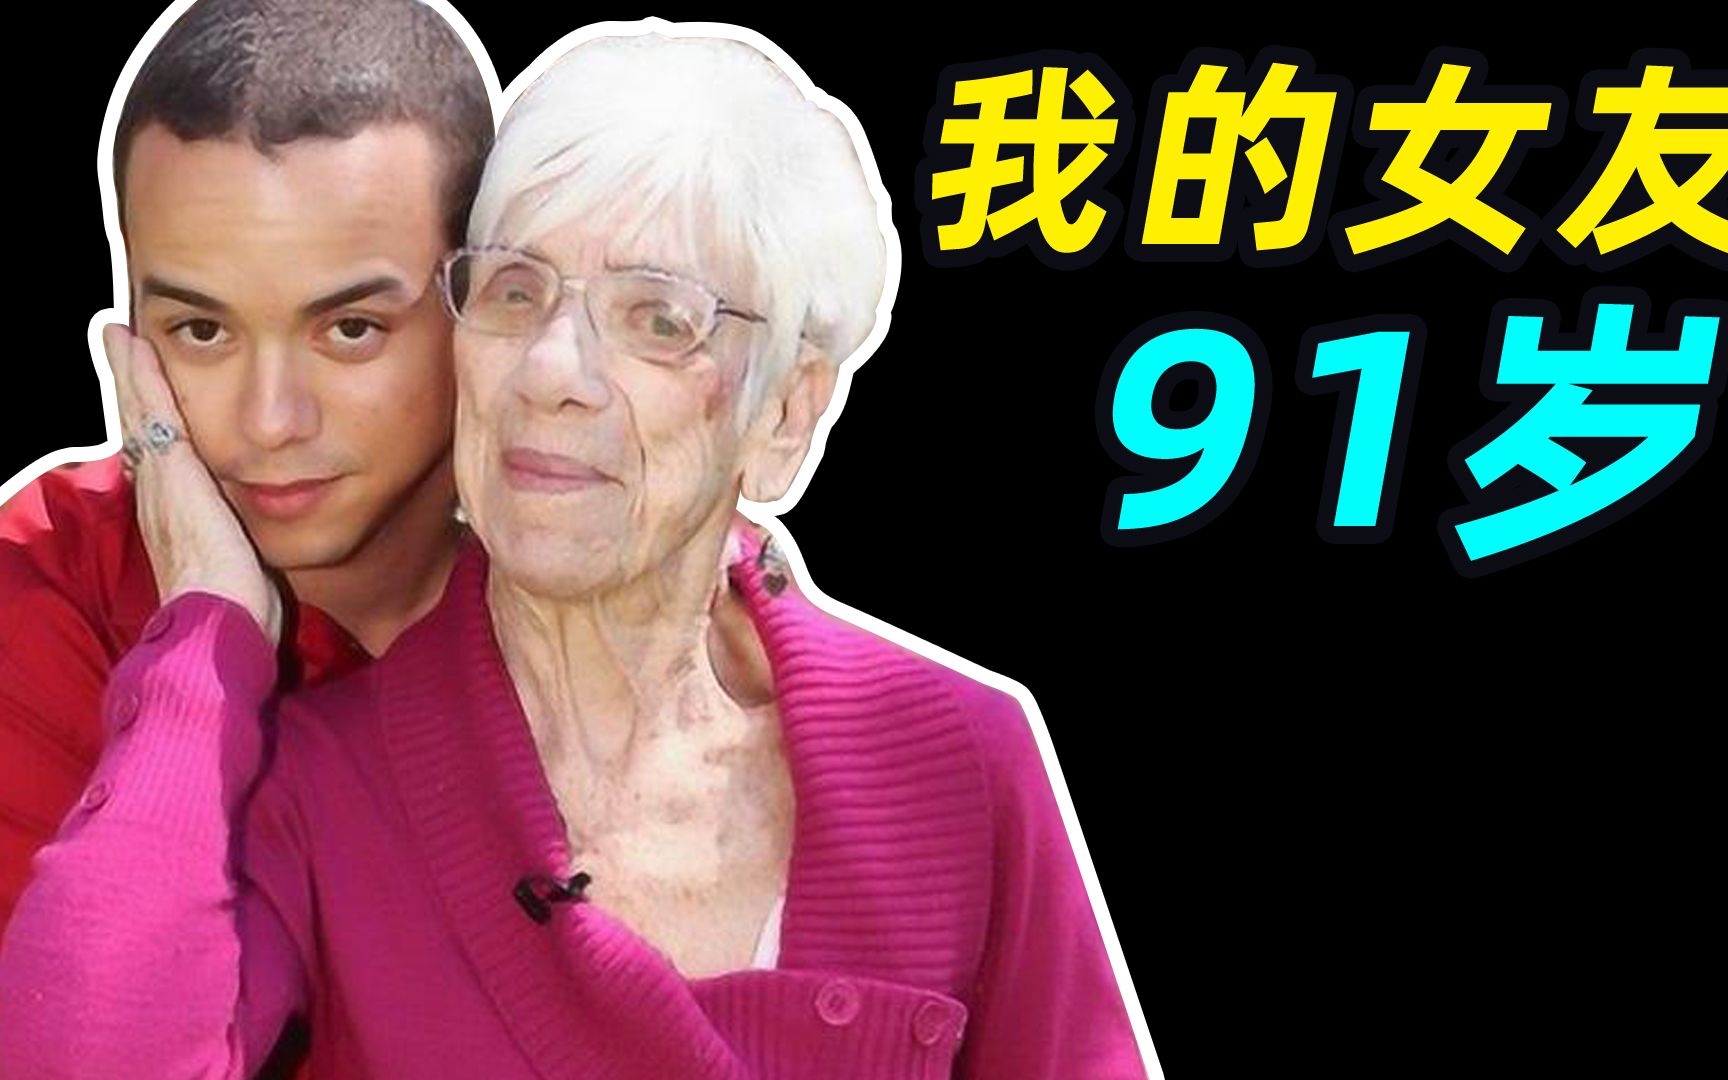 32岁差忘年恋！日本61岁奶奶和29岁小伙相恋并结婚，却被网友扒出内幕没那么美好… - 知乎